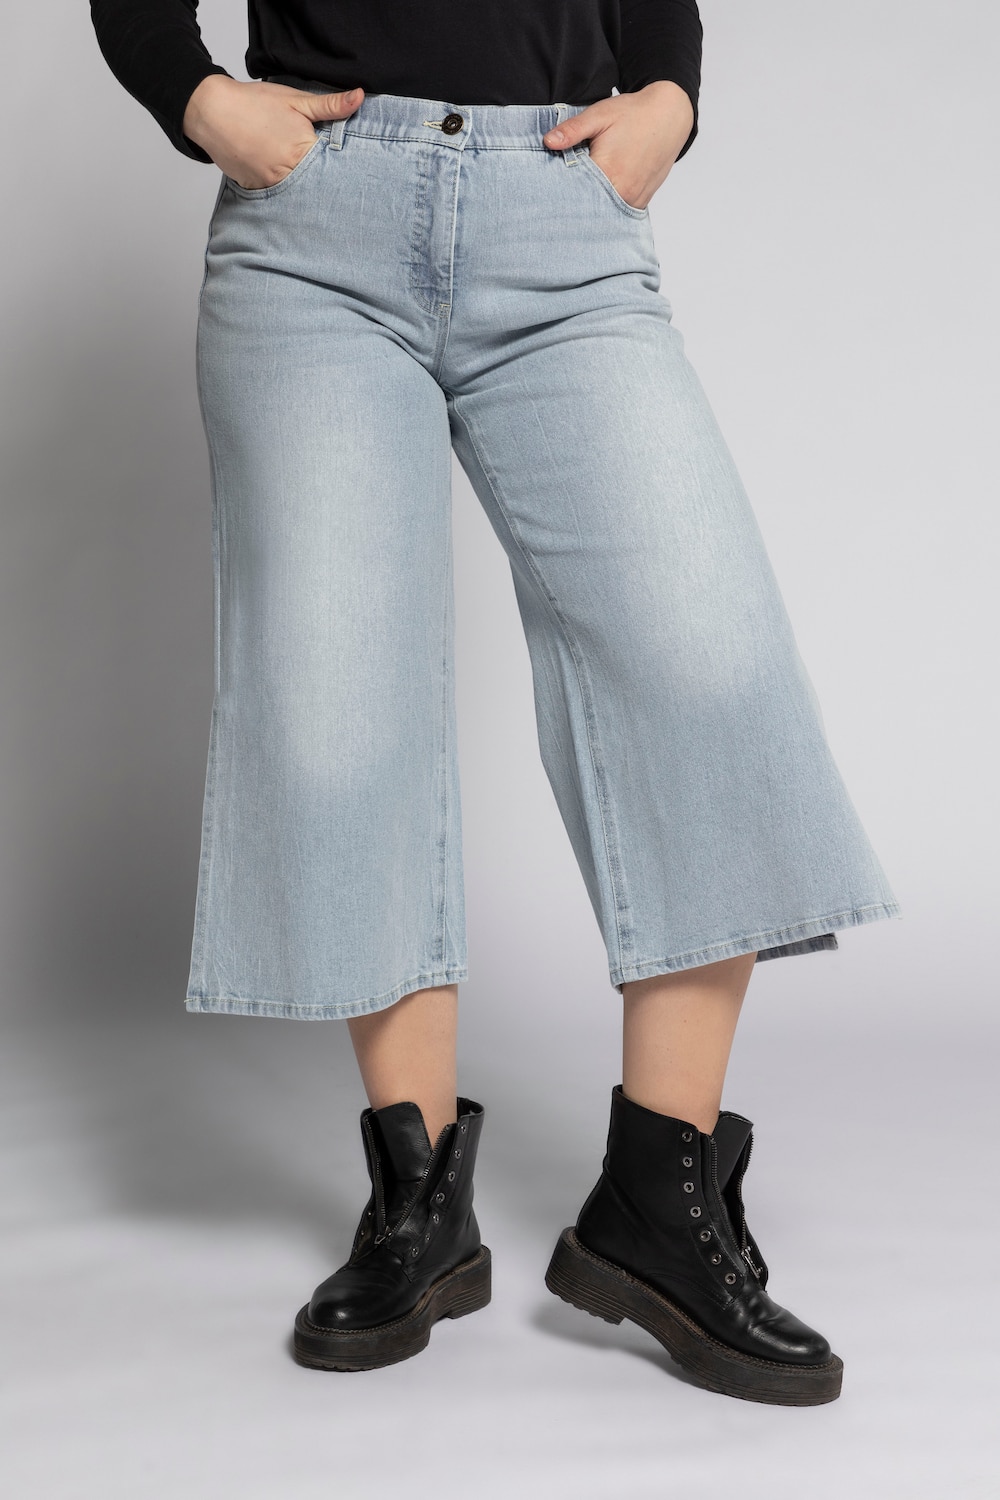 Grote Maten jeans culotte, Dames, blauw, Maat: 48, Katoen, Studio Untold